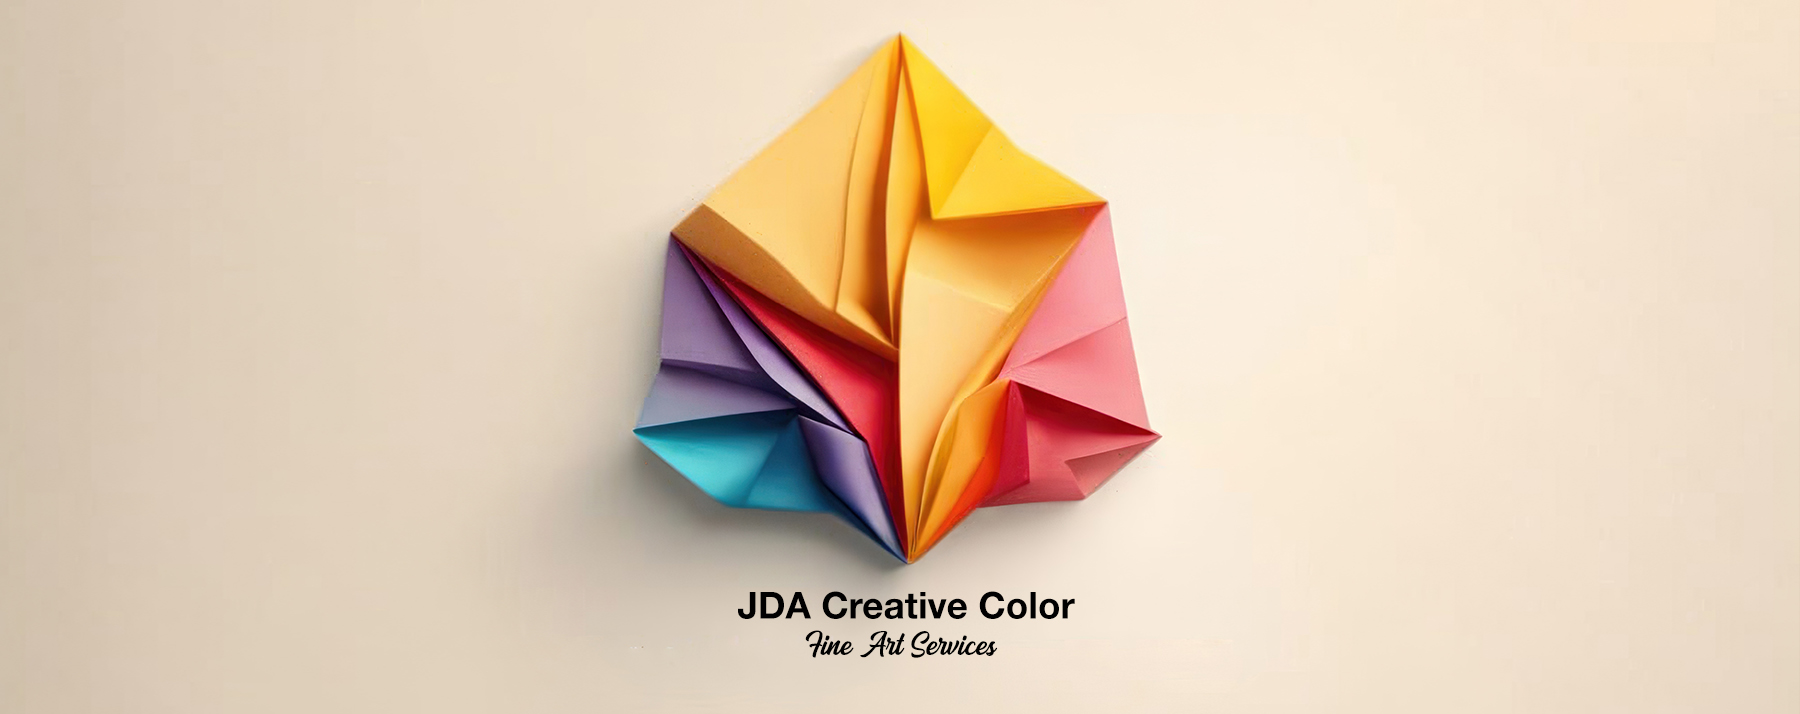 JDA Creative Color